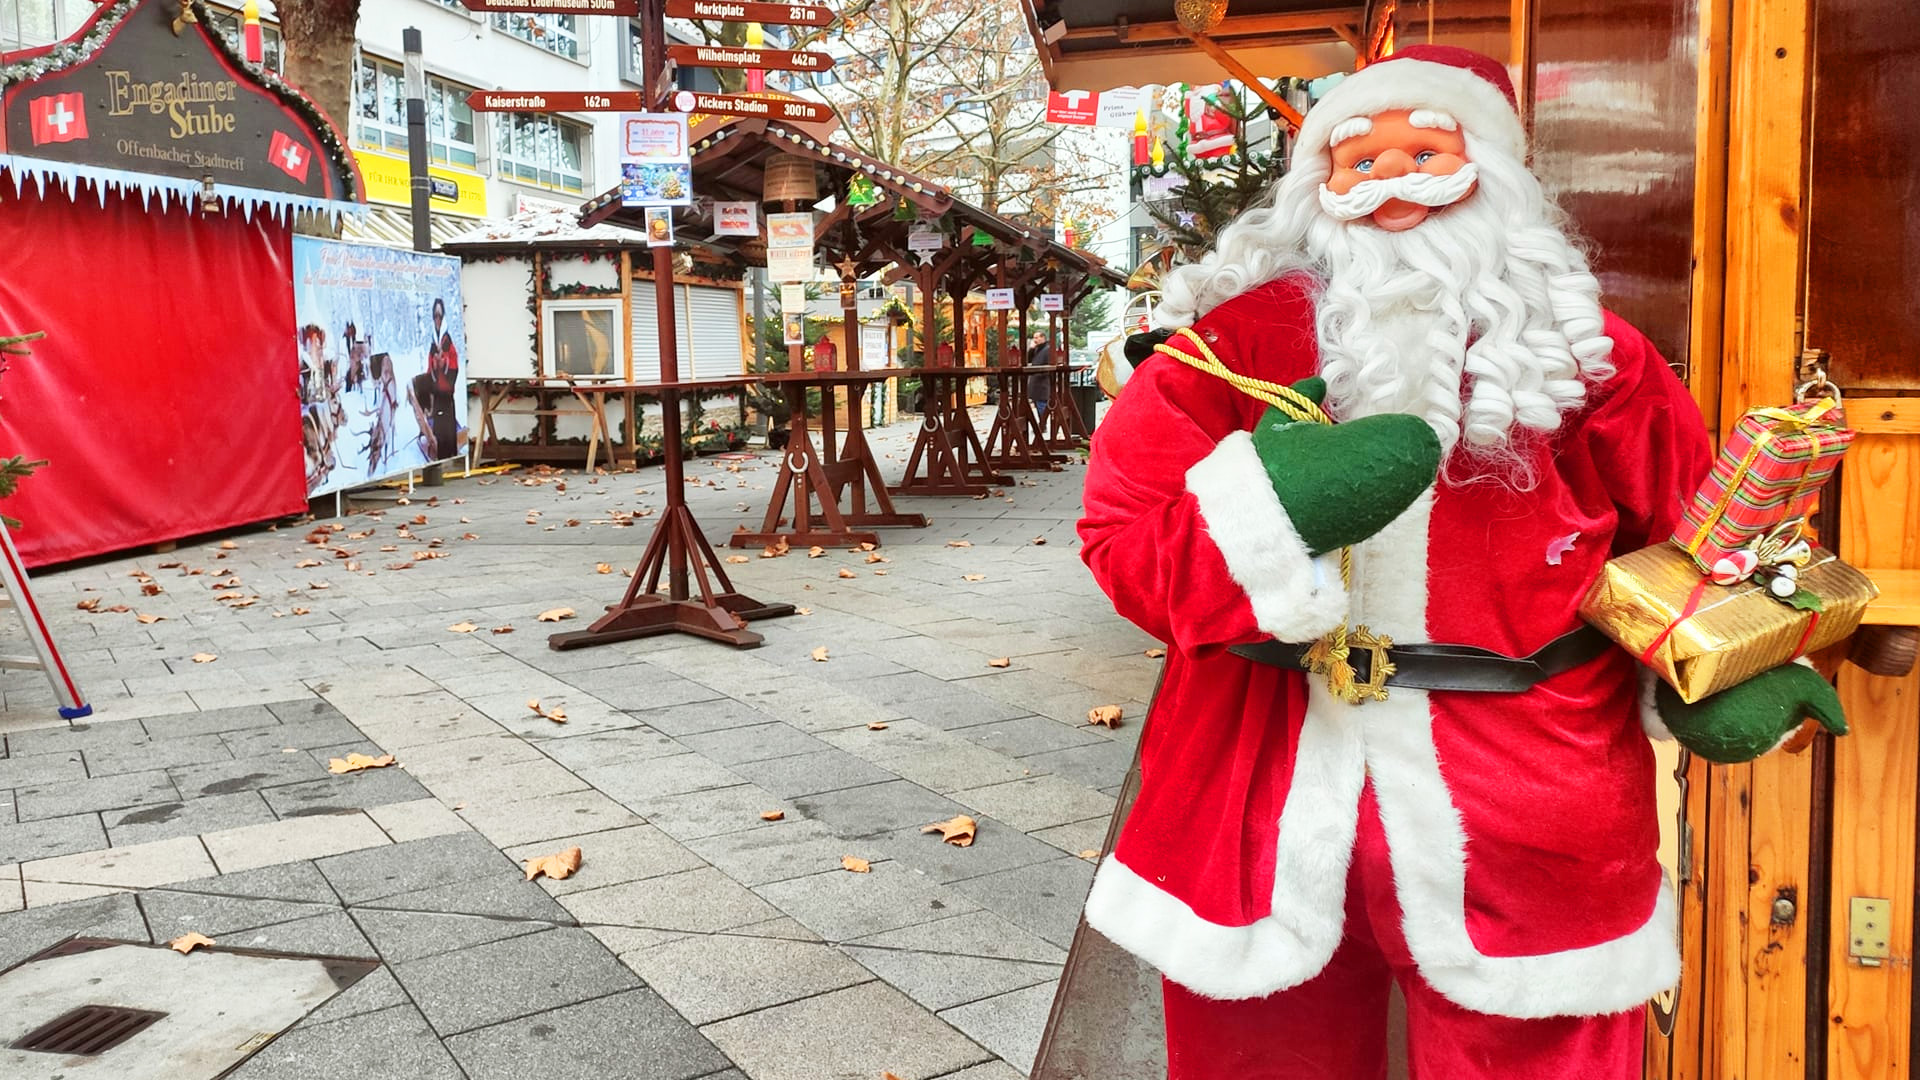 Weihnachtsmarkt Offenbach 2021 wird eingezäunt - Zugangsbeschränkungen 2G 3G